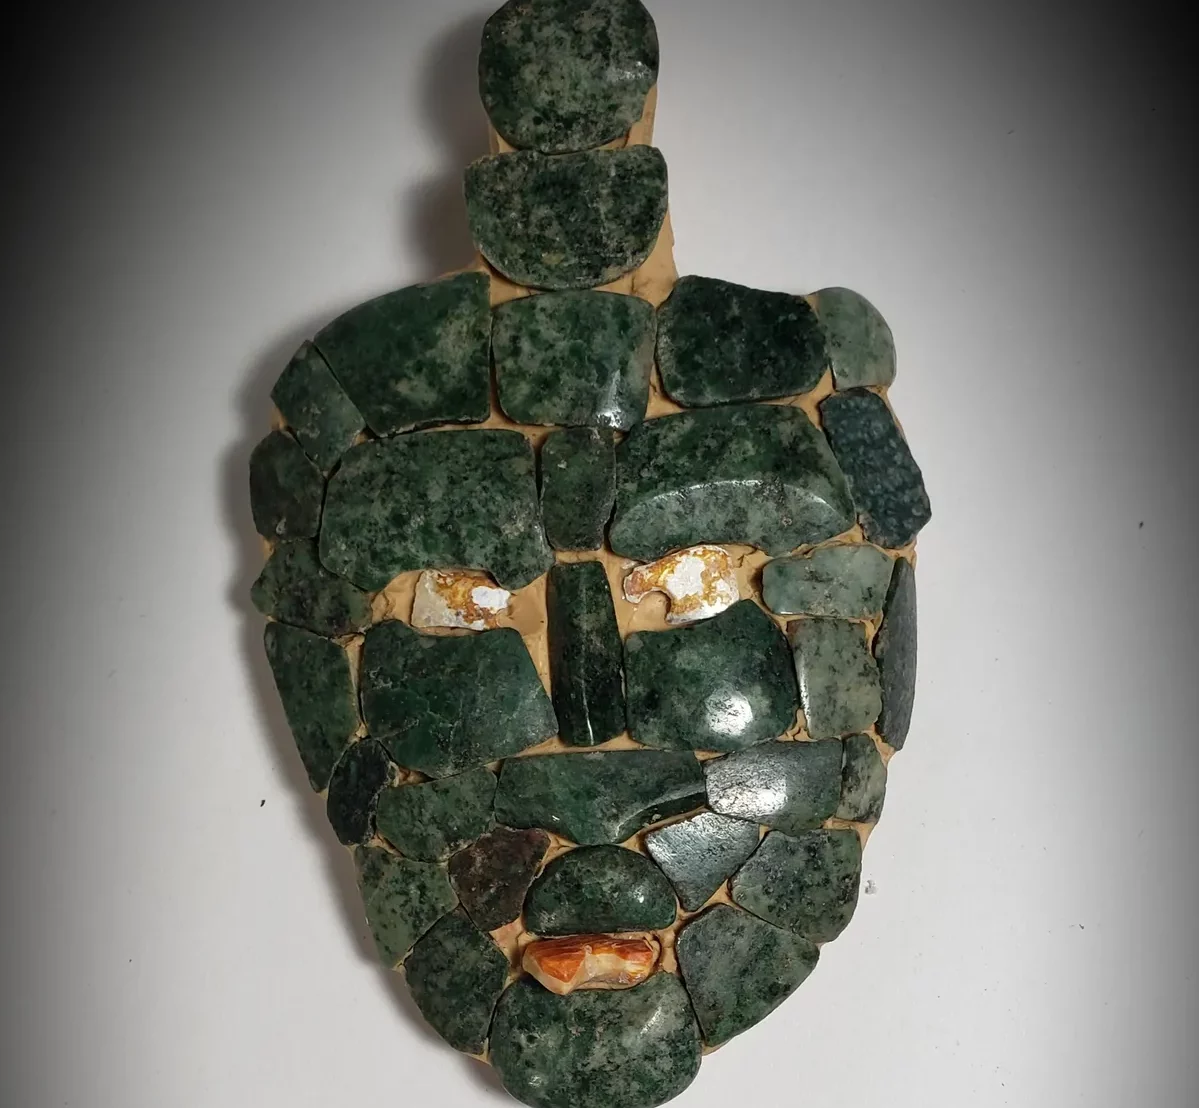 Una maschera verde di giada scoperta in una piramide dei Maya